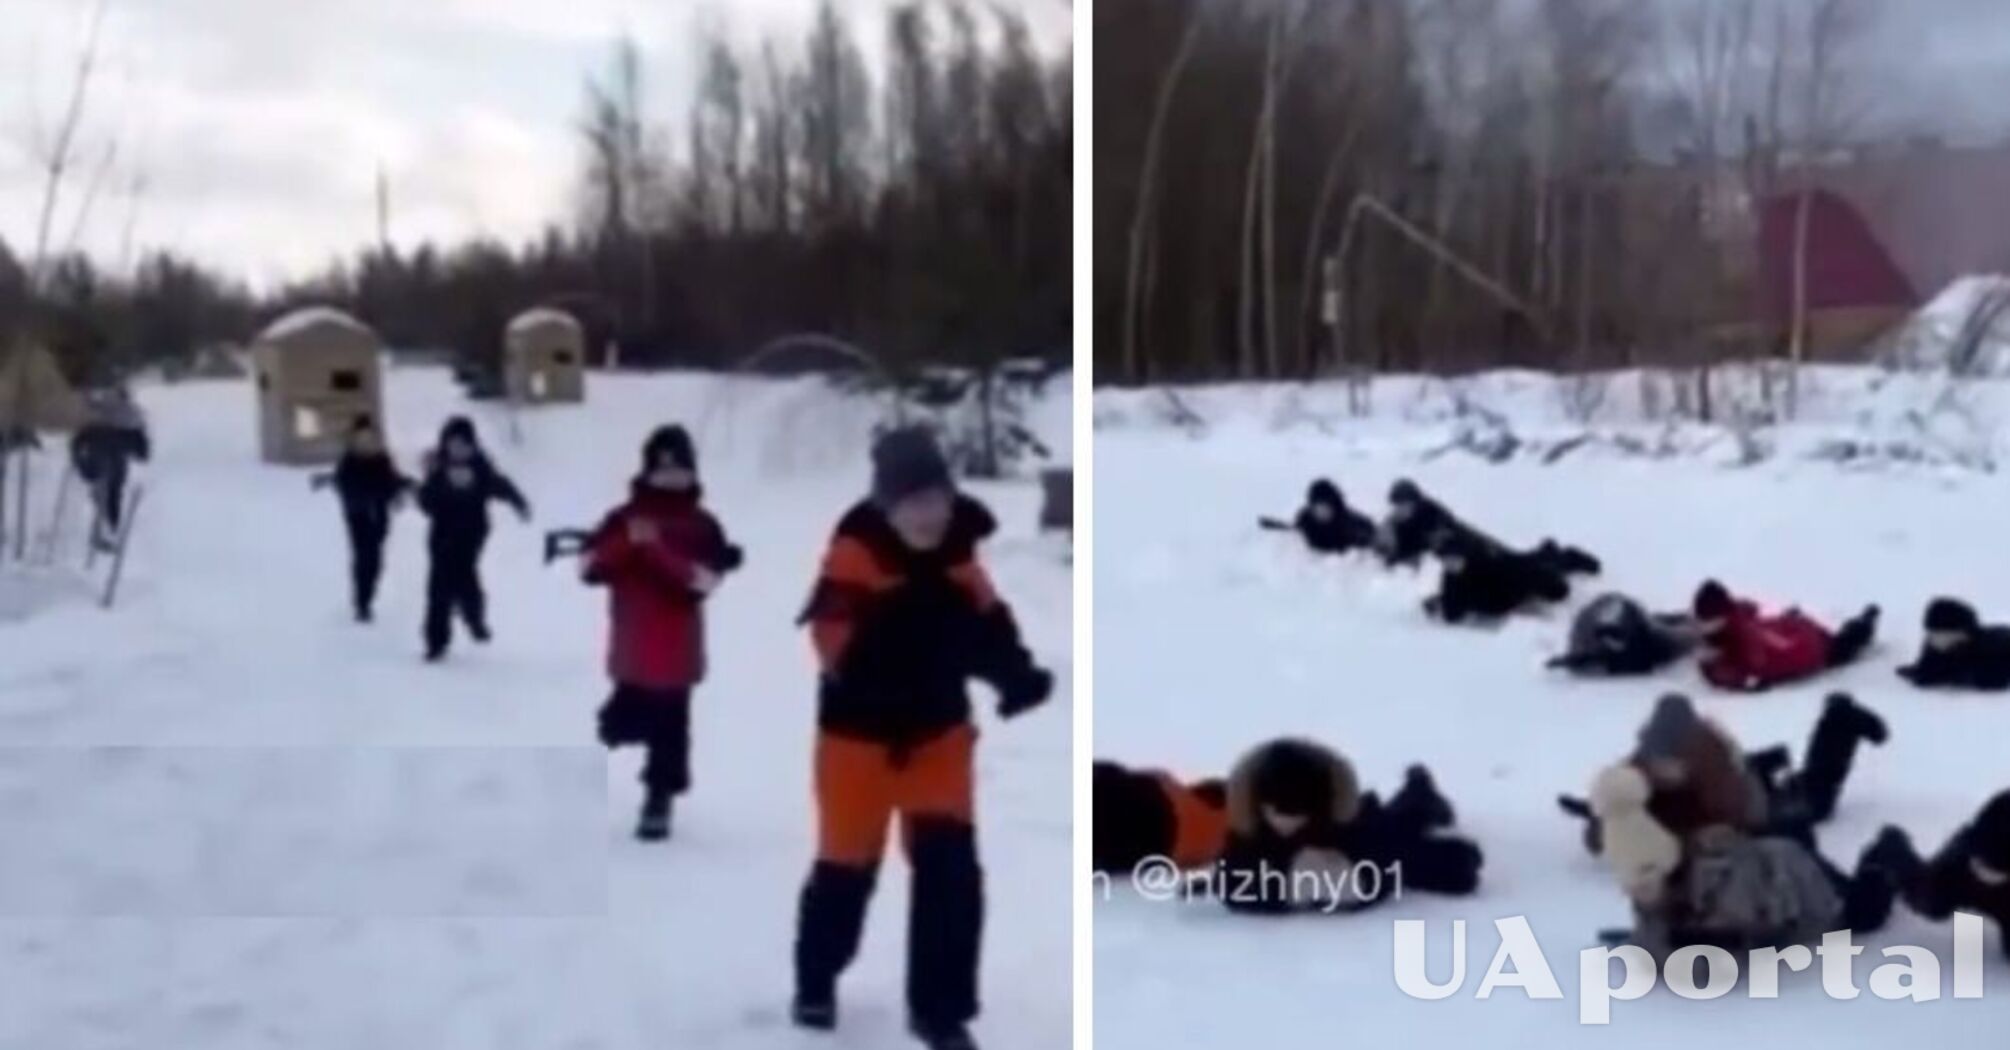 Бегали и ползали по снегу с оружием в руках: появились кадры патриотического воспитания малолетних детей на россии